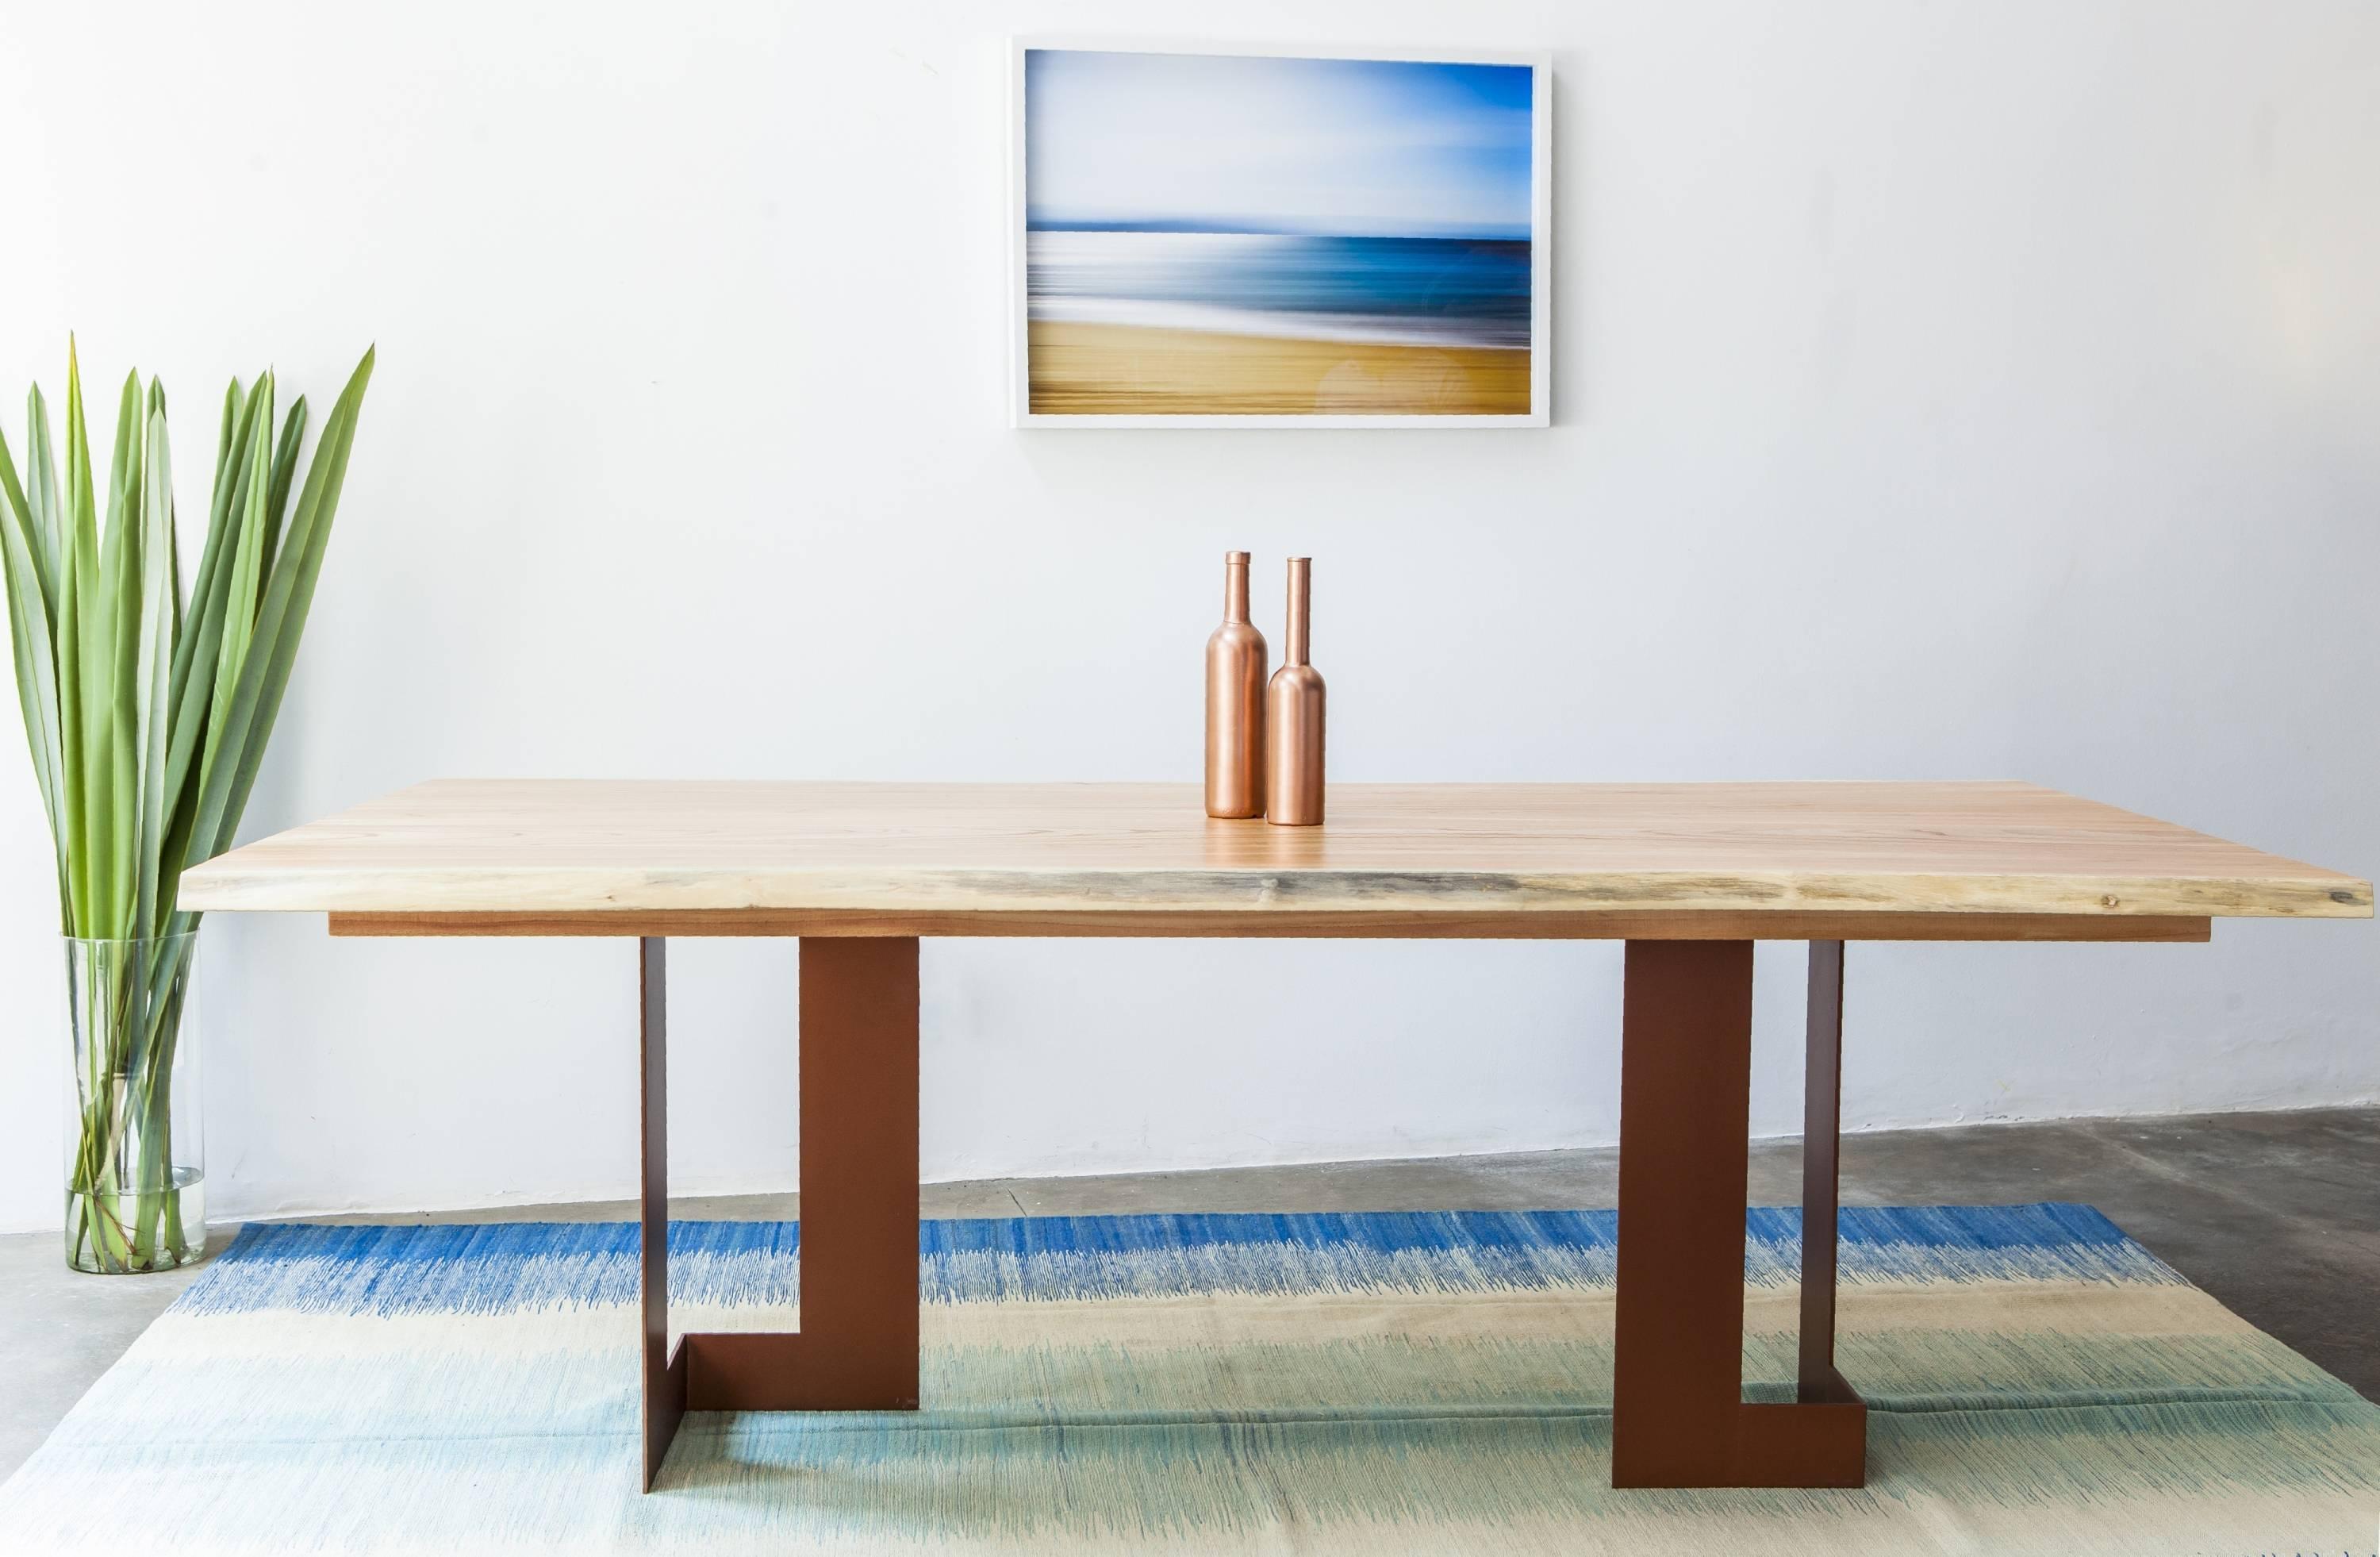 Cette table de salle à manger en bois massif de style minimaliste s'inspire de projets architecturaux modernistes et de la grâce de leurs structures, dont Alessandra Delgado Design s'est inspirée pour concevoir la table de salle à manger 'Planos'.